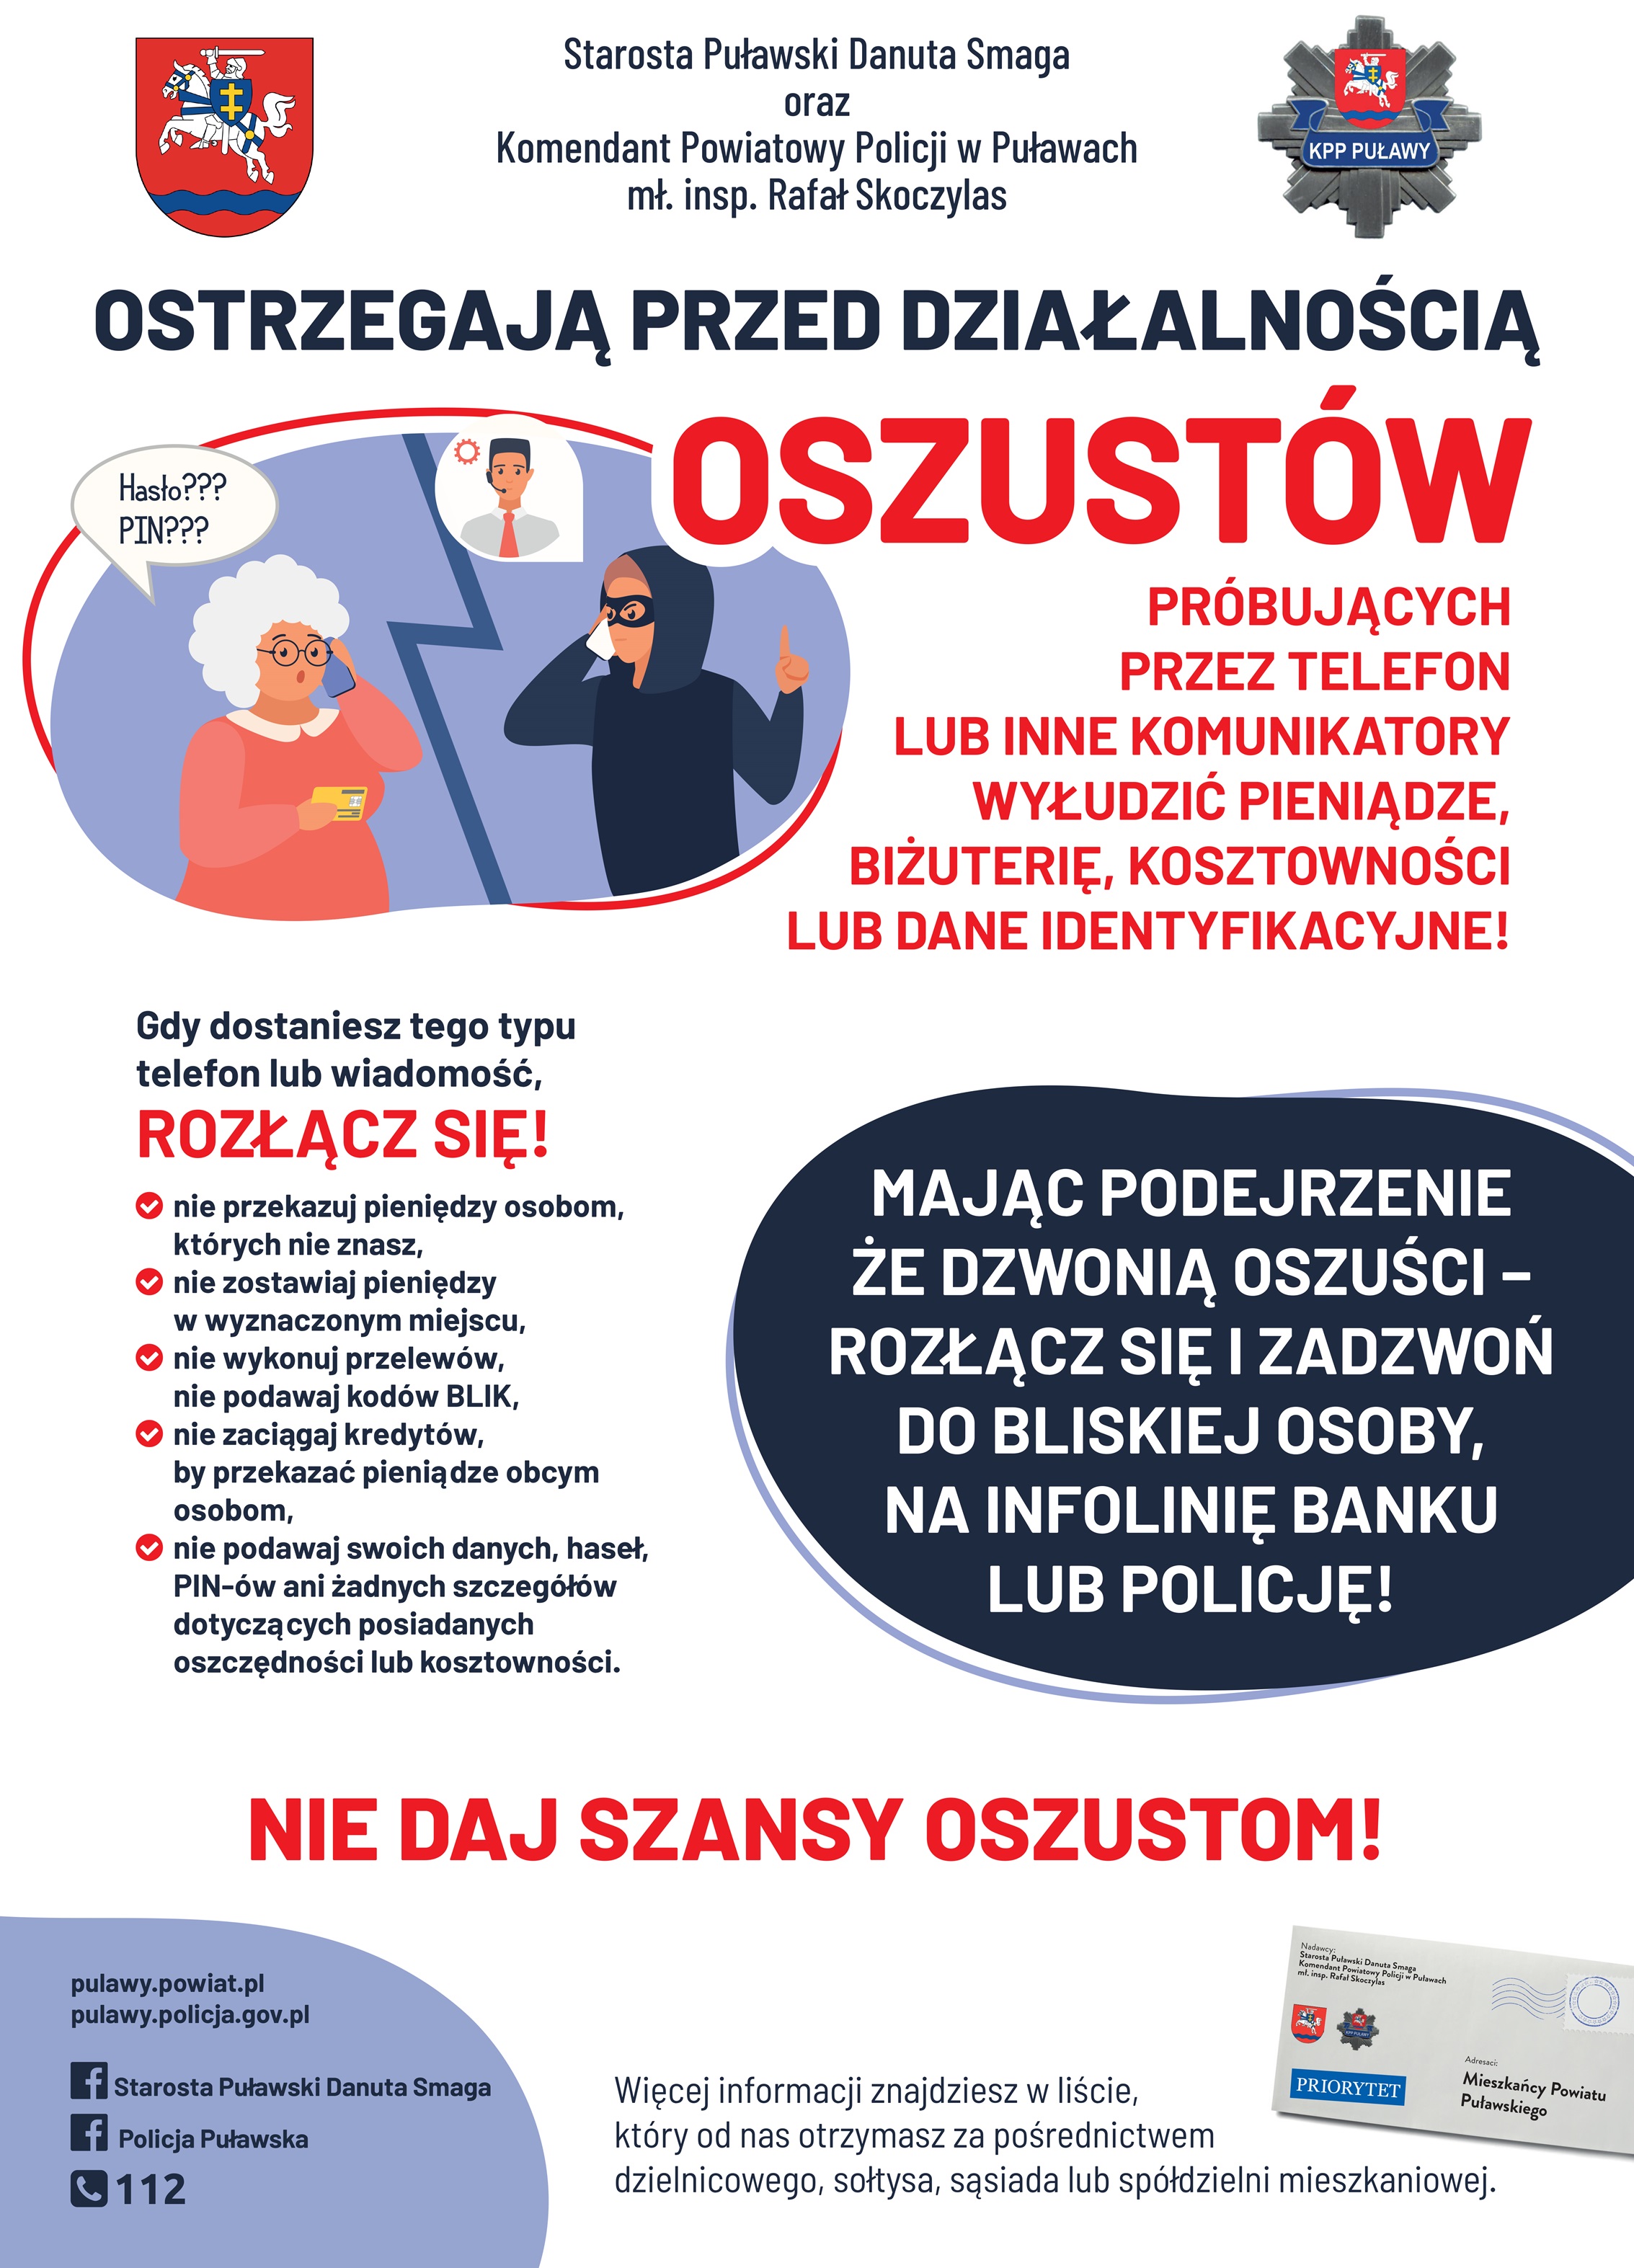 Zdjecie prezentuje plakat promujący akcję społeczną Starosty Puławskiego i Komendanta Powiatowego Policji w Puławach: „Poczta sąsiedzka” czyli dobra rada od sąsiada.